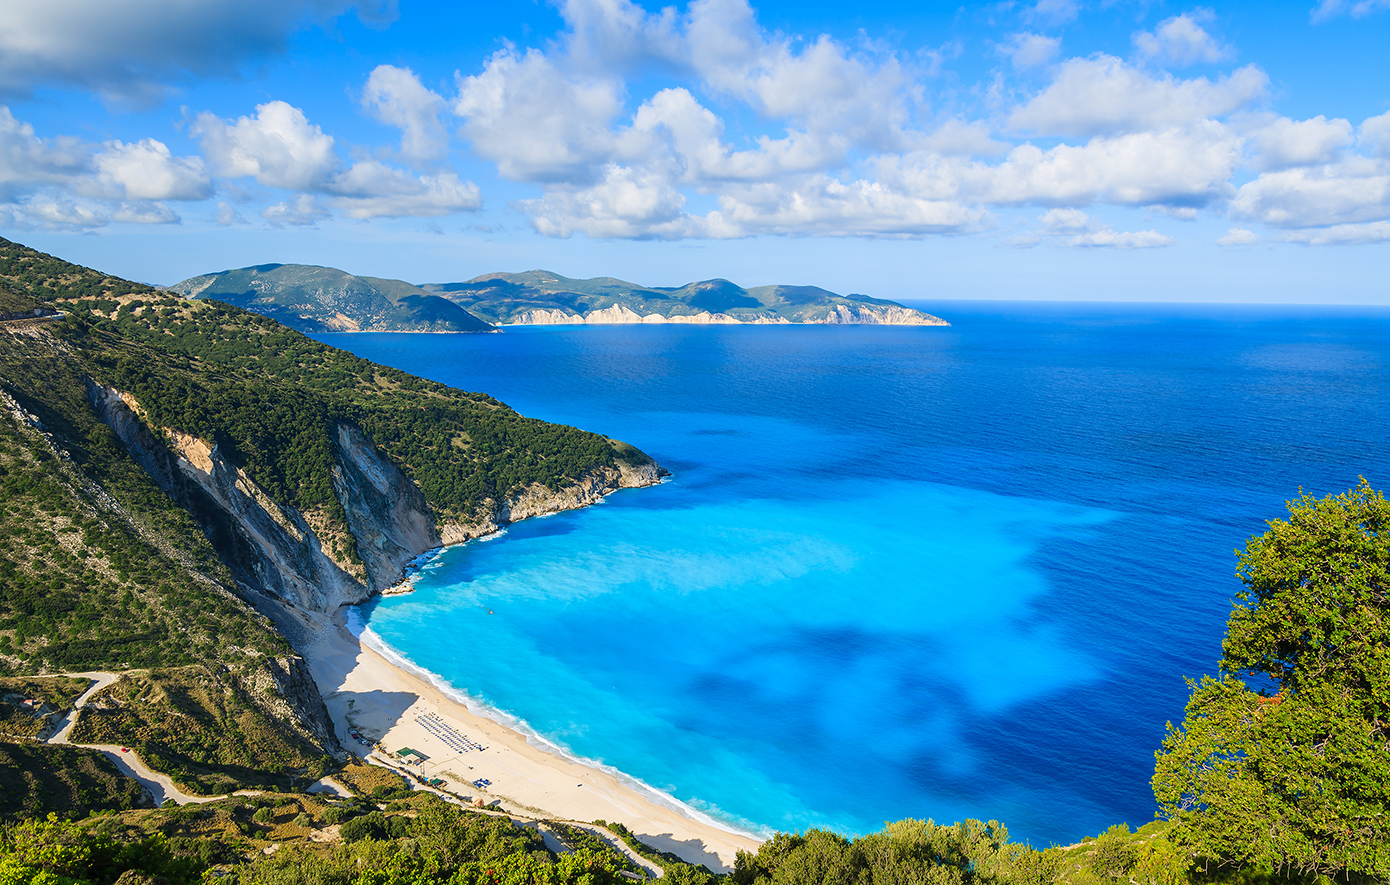 Στην Κεφαλονιά θα βρείτε μία από τις κορυφαίες παραλίες της Ευρώπης